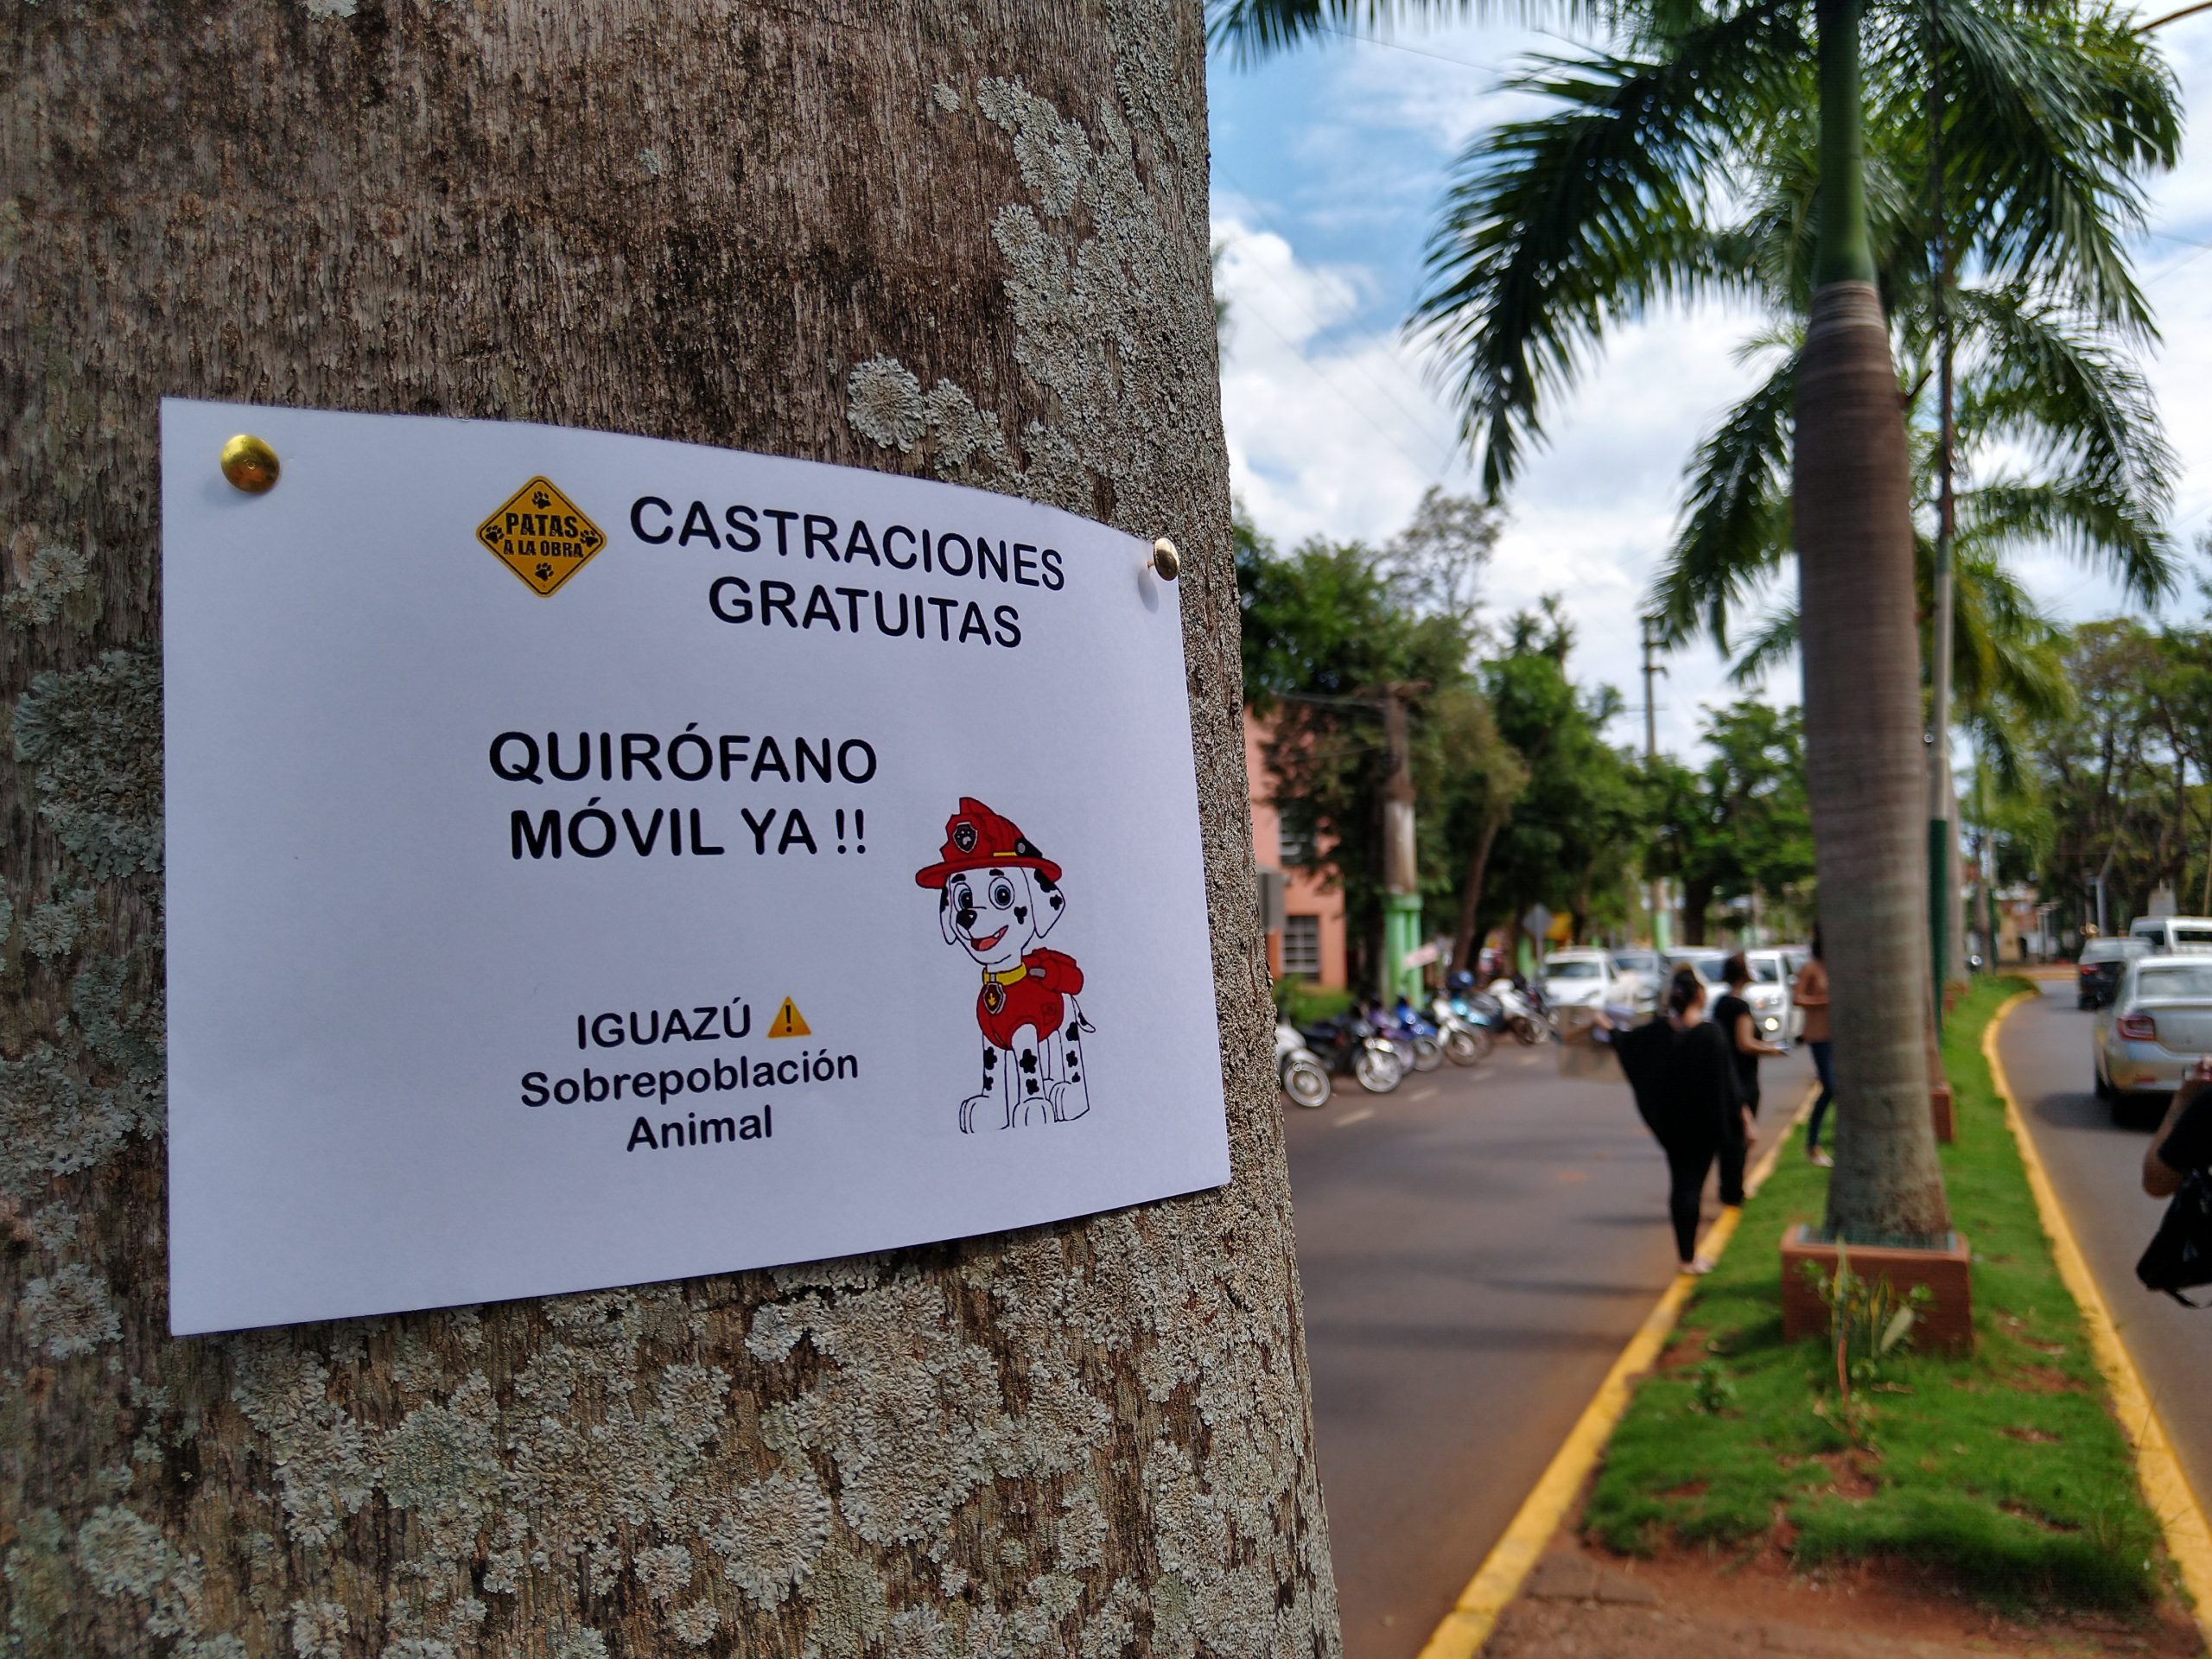 Iguazú: El municipio se comprometió a reactivar el quirófano móvil, pero no dio fechas